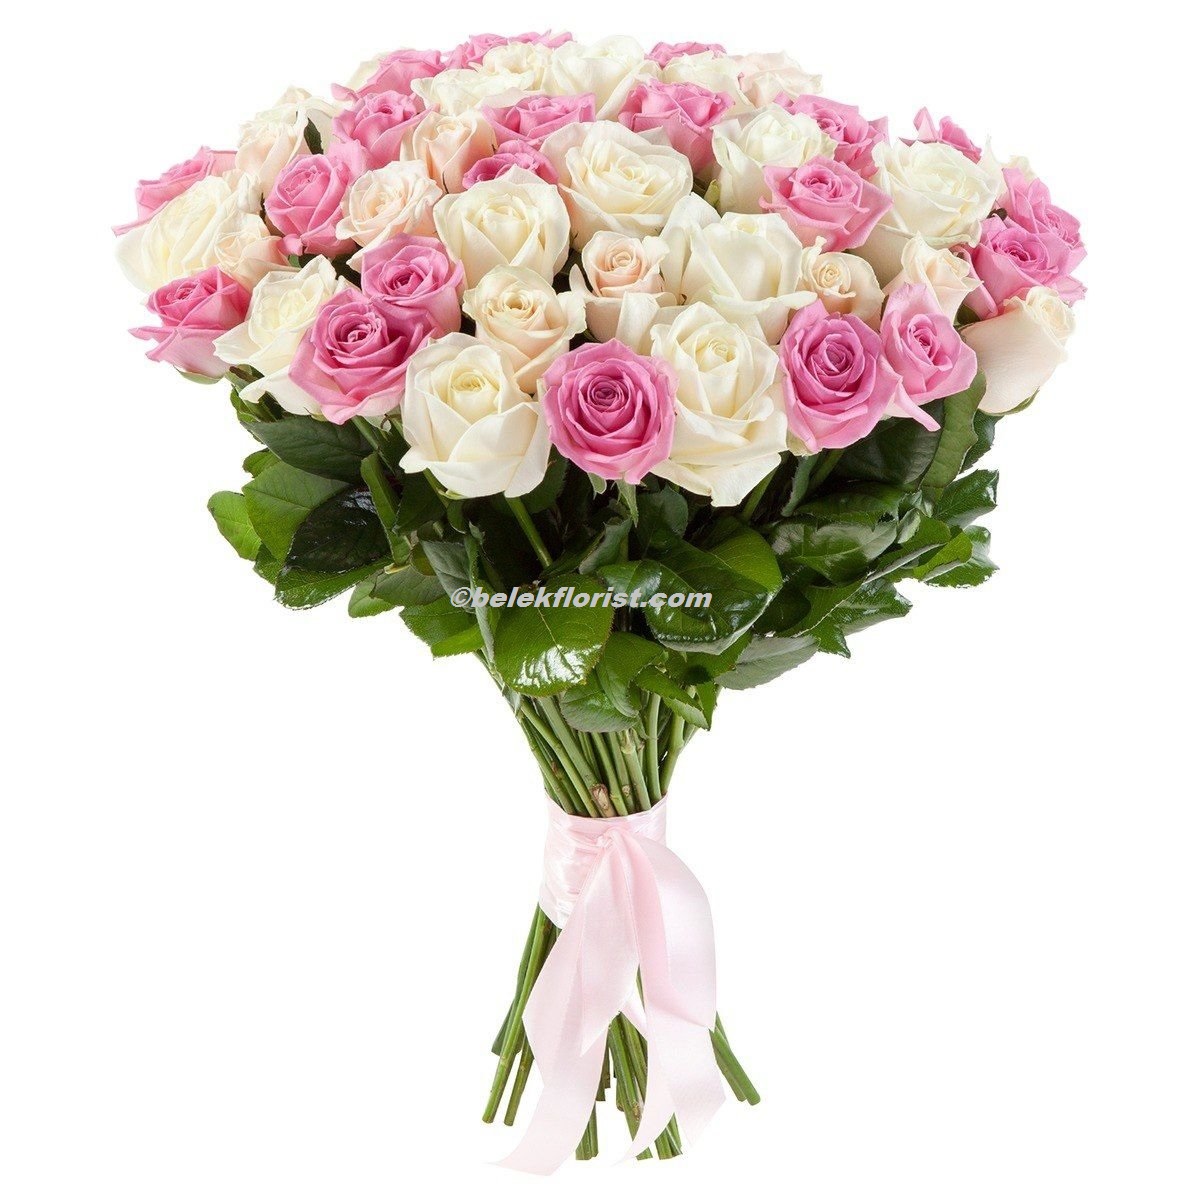  Belek Blumenlieferung 51 pcs. Pink white rose